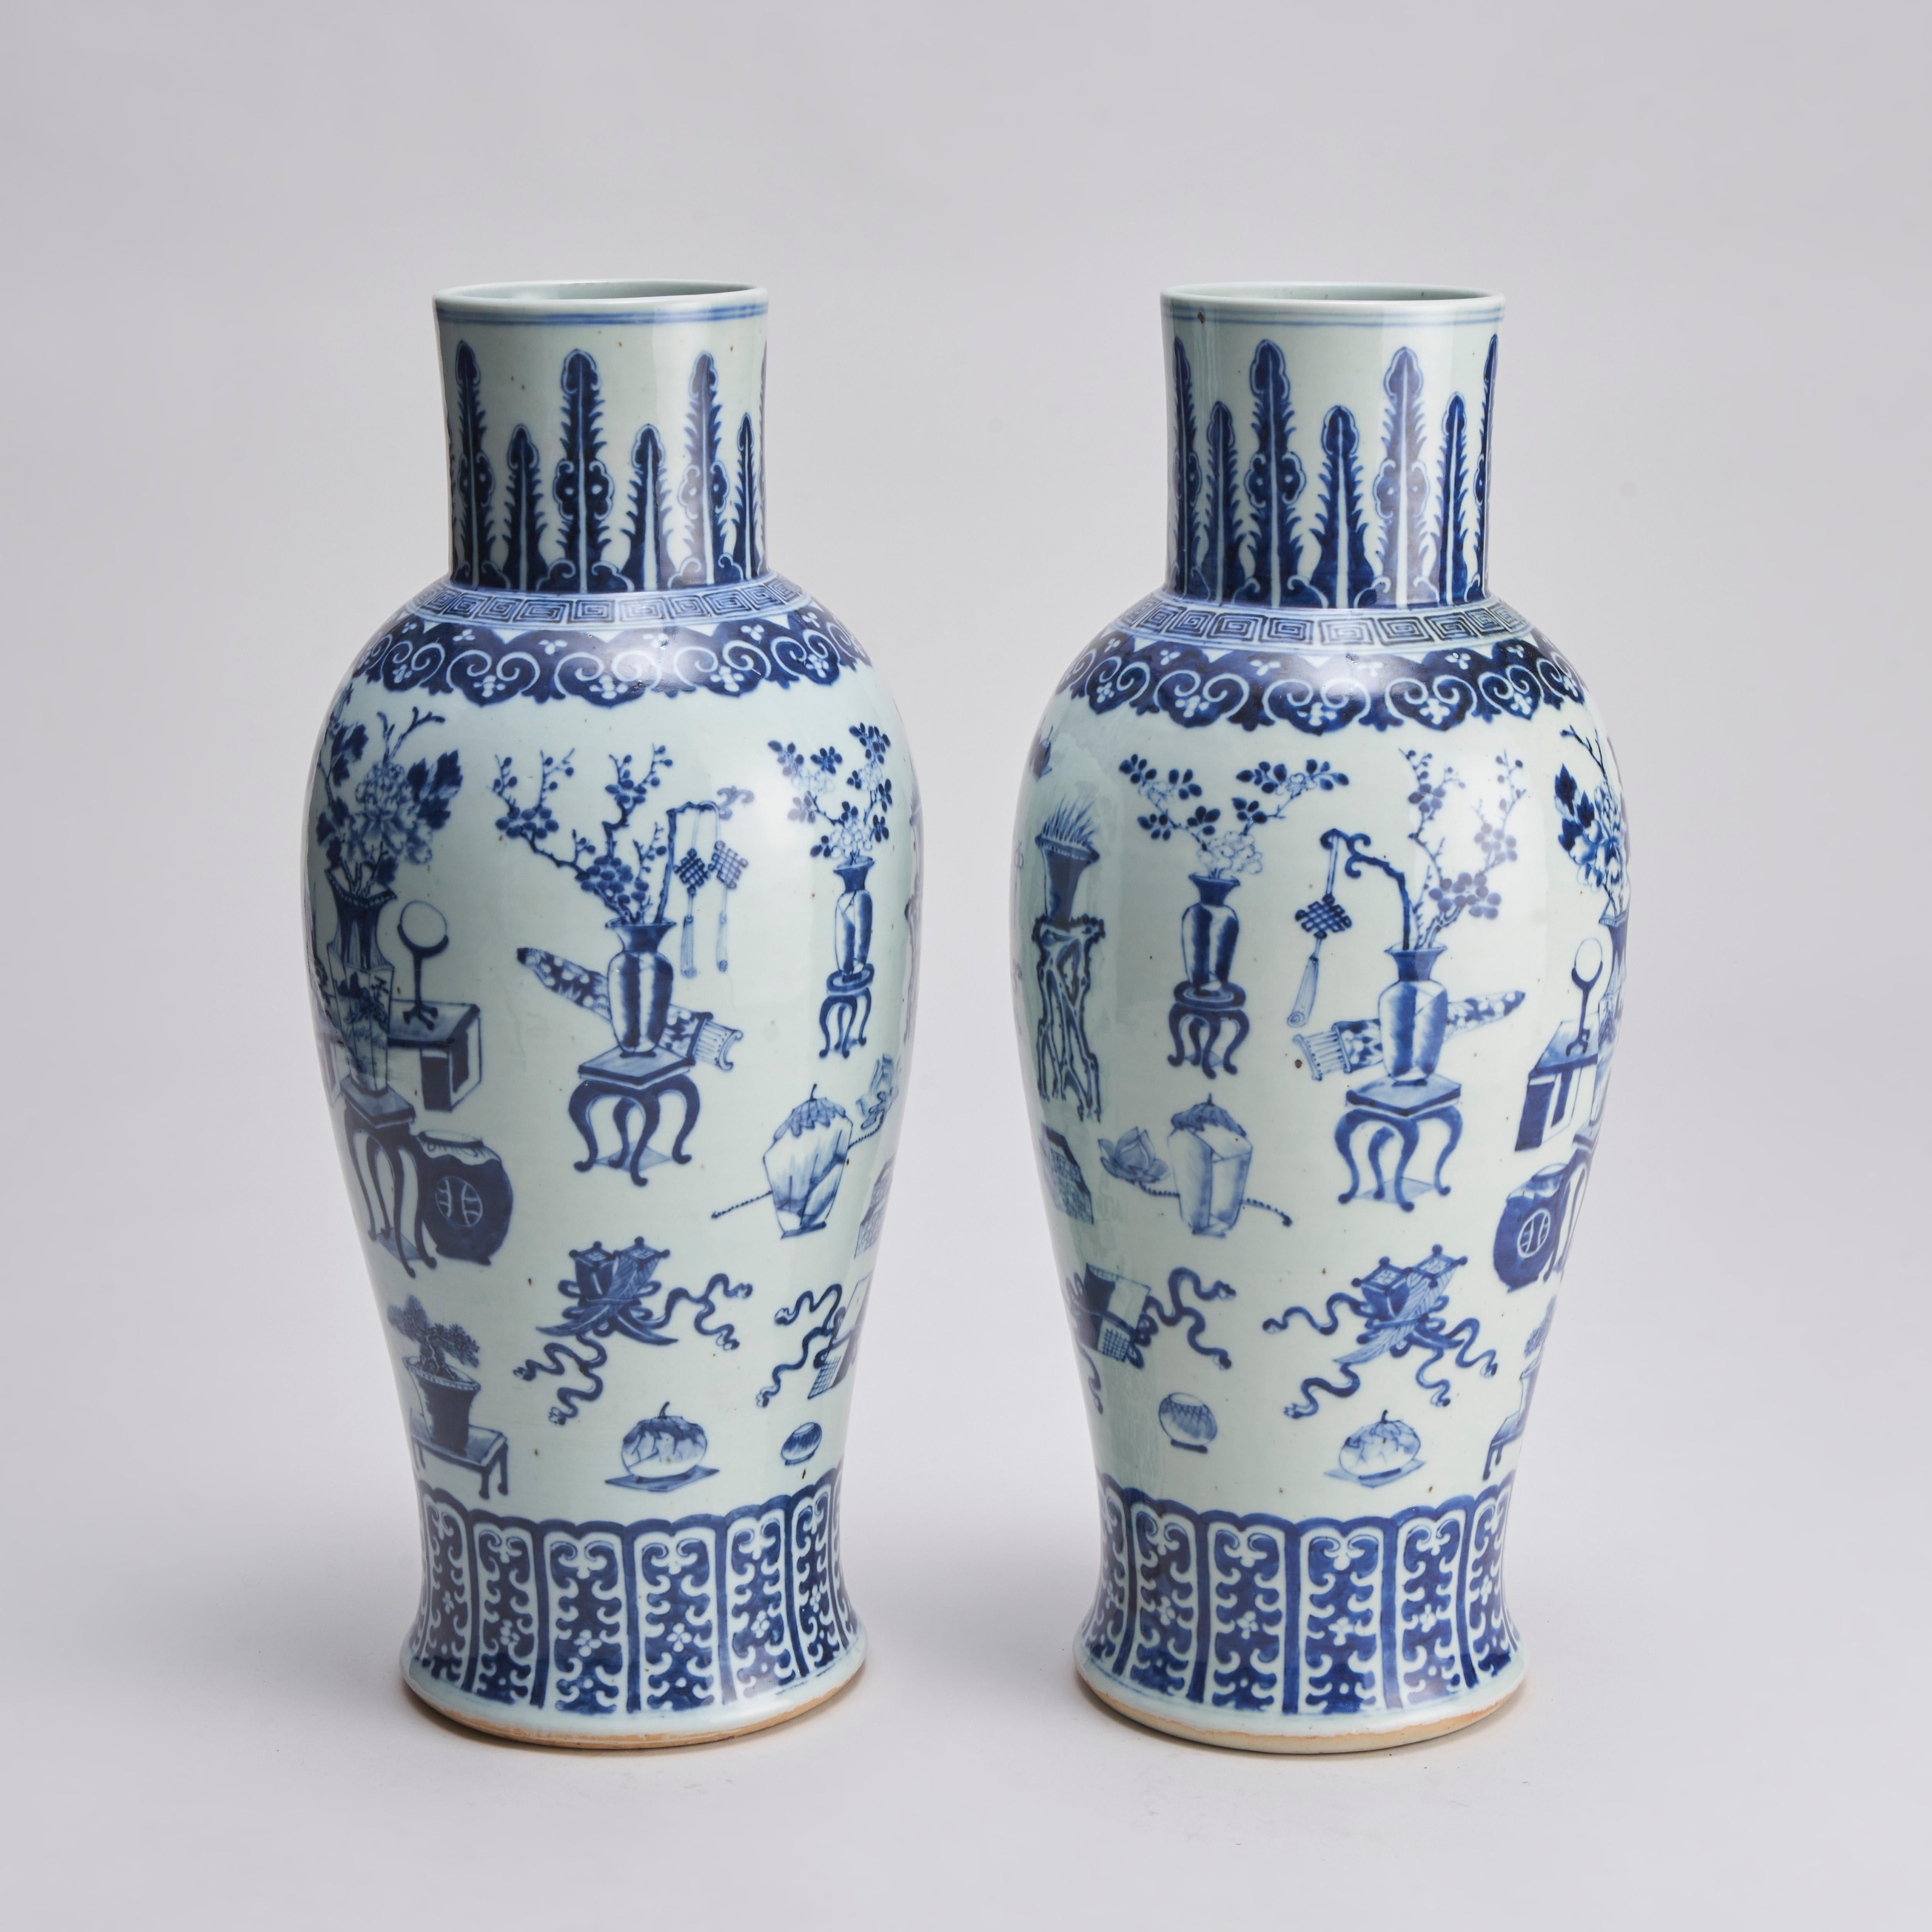 Aus unserer Sammlung von antikem chinesischem Porzellan: ein Paar chinesische blau-weiße Vasen aus dem 19. Jahrhundert mit feinem Blumendekor und kostbaren wissenschaftlichen Objekten wie Schriftrollen, Vasen, Blumendekorationen und Schreibgeräten